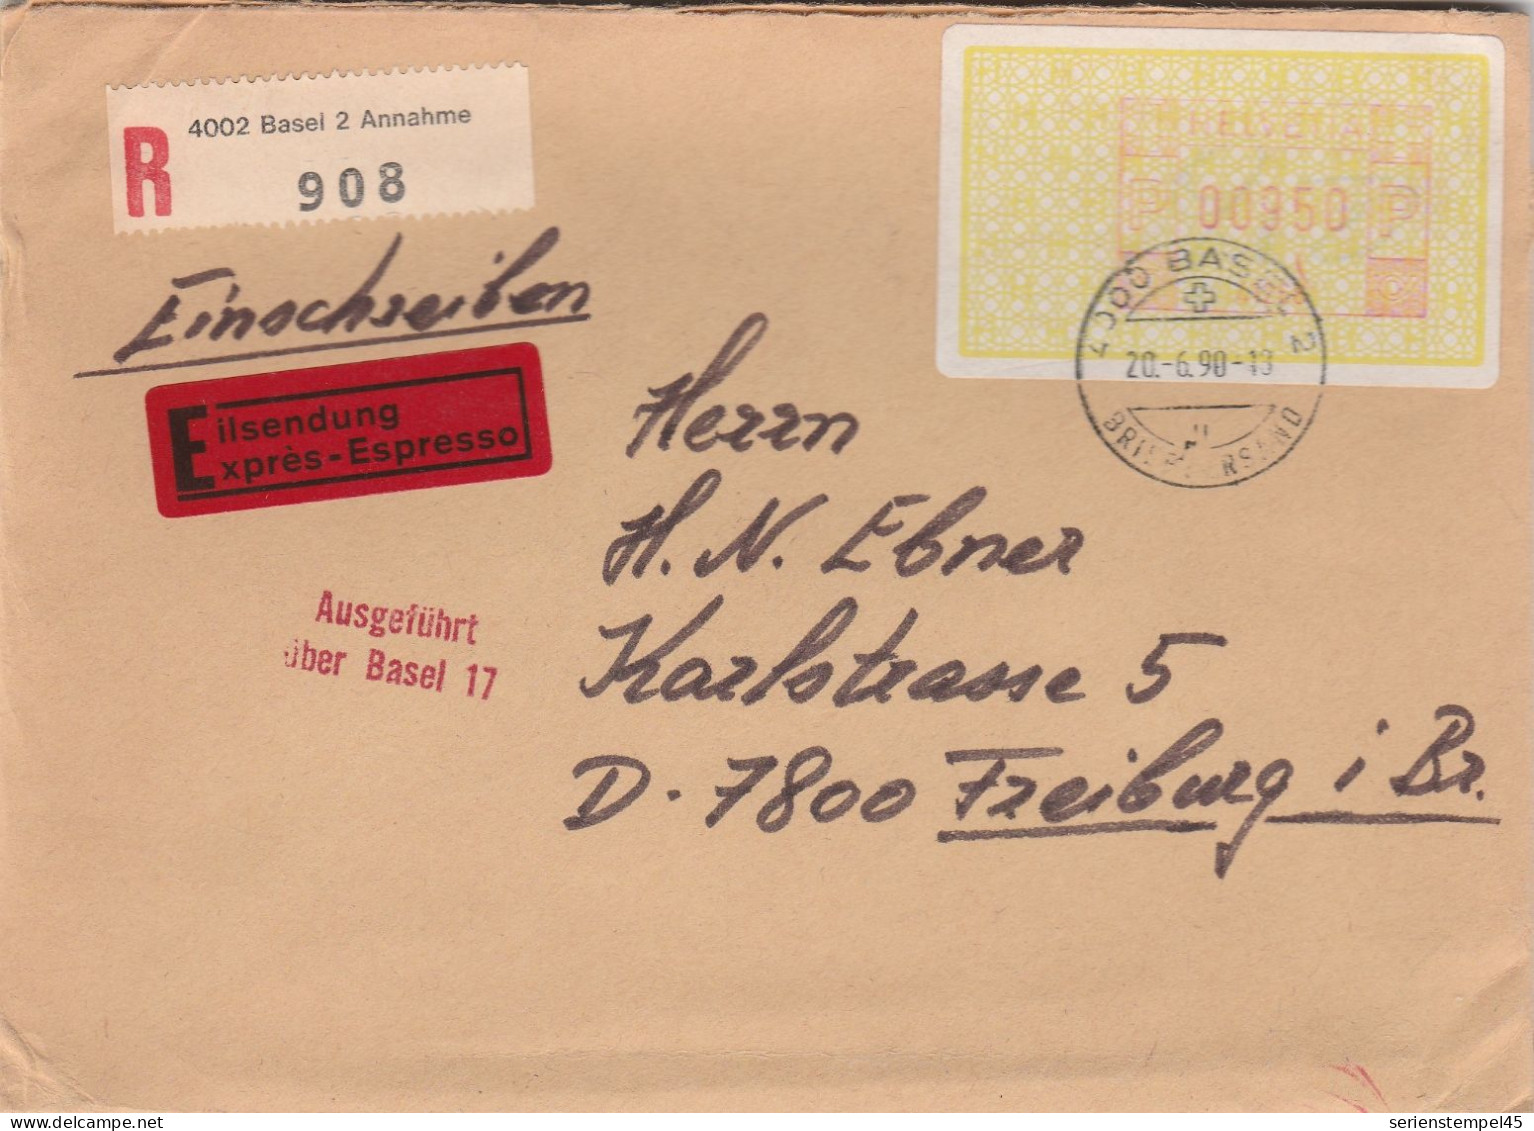 Schweiz Express Einschreiben Brief 4002 Basel 2 Annahme Mit Freistempel 41268 Porto 950 P 1990 - Postage Meters